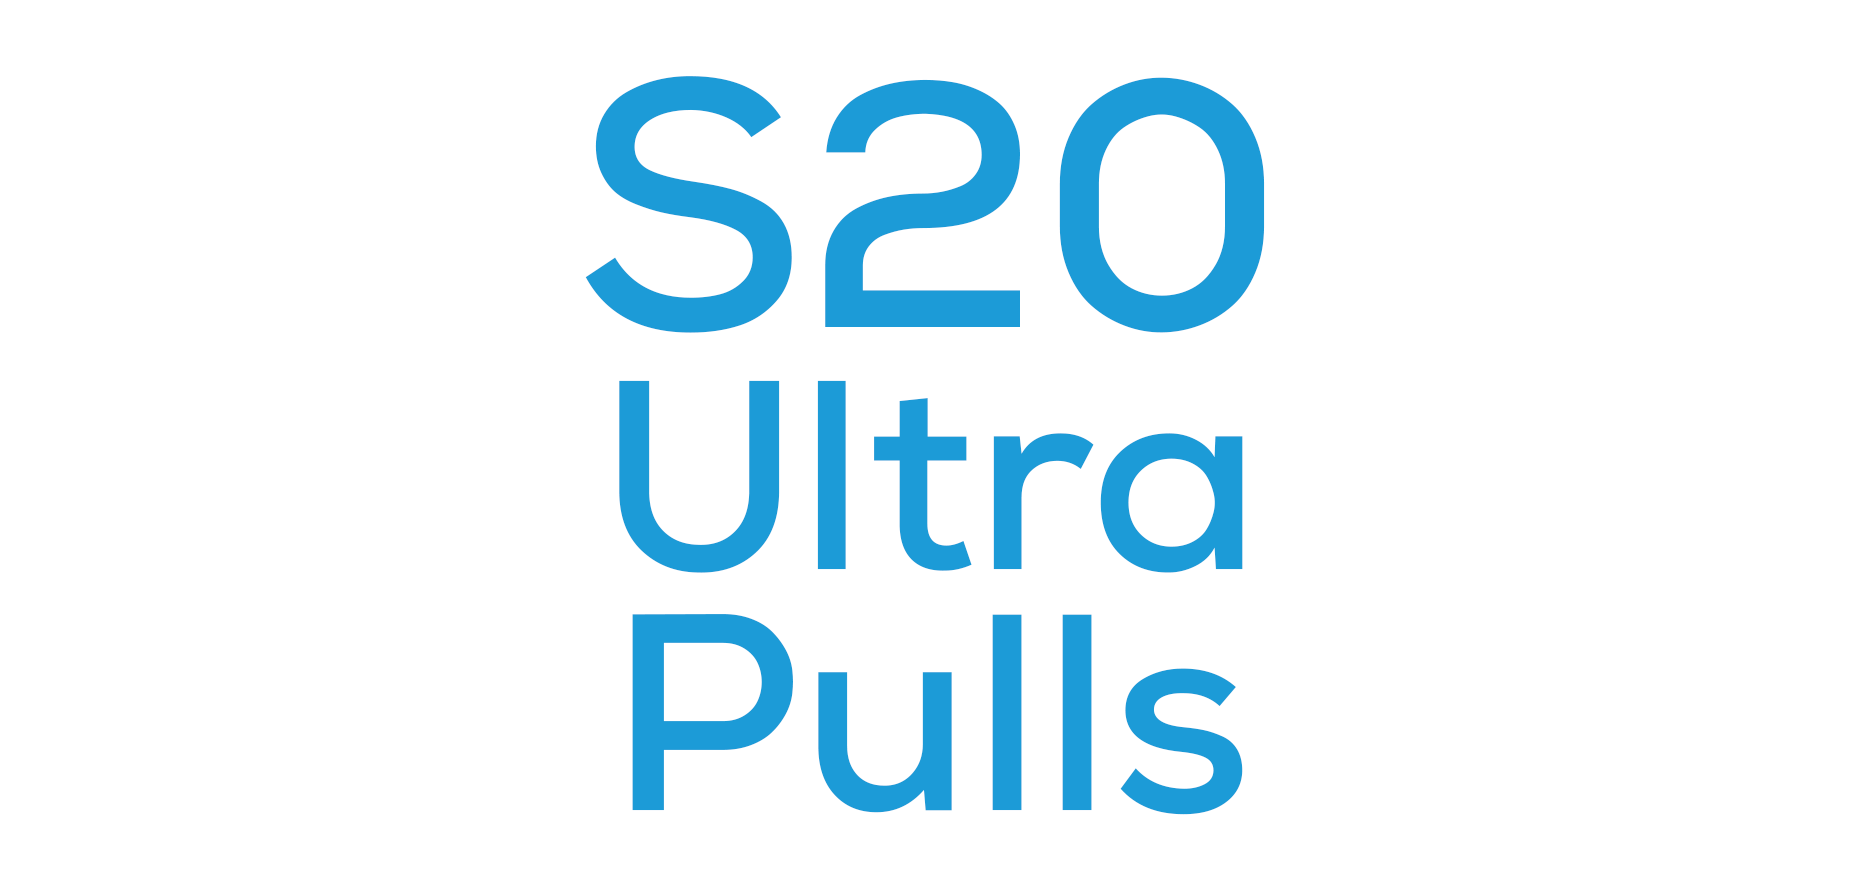 Galaxy S20 Ultra Pulls